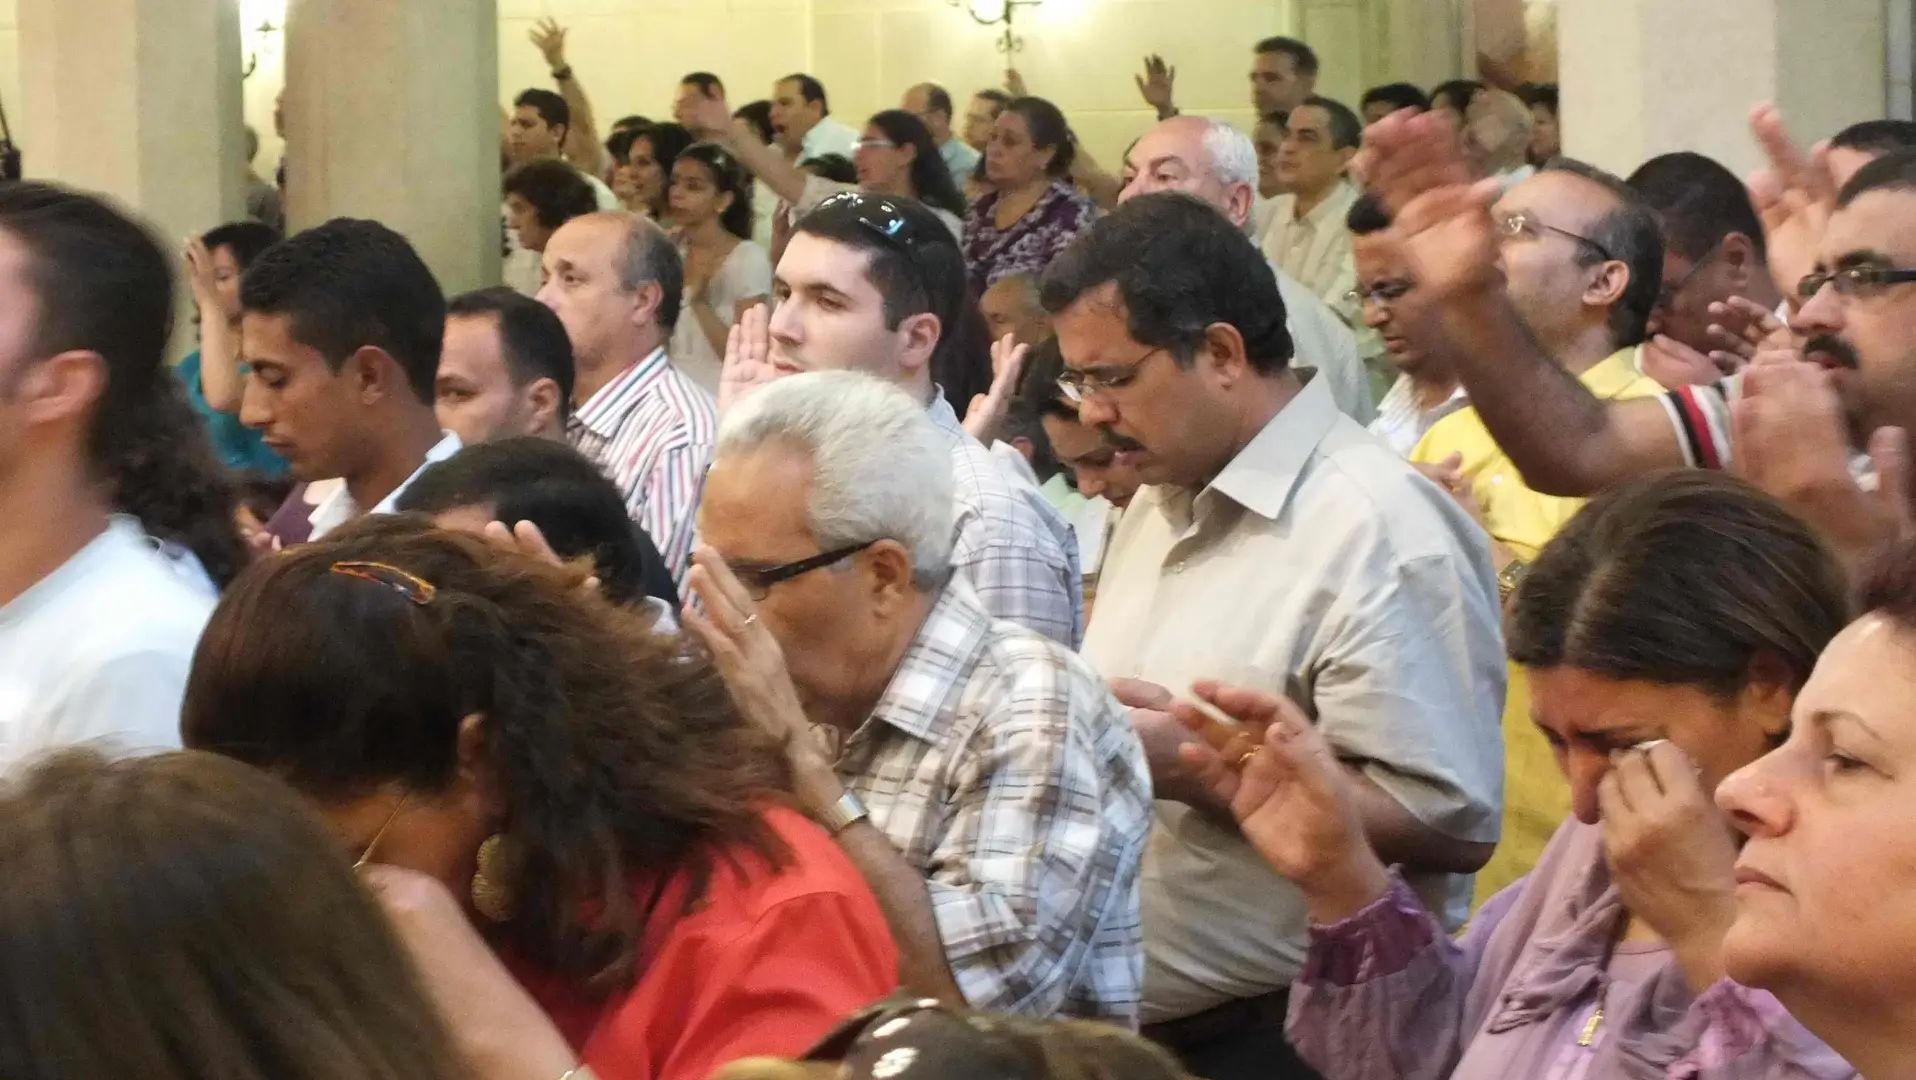 Igreja avança em meio à perseguição no Egito | RADIO UNIDADE DIGITAL